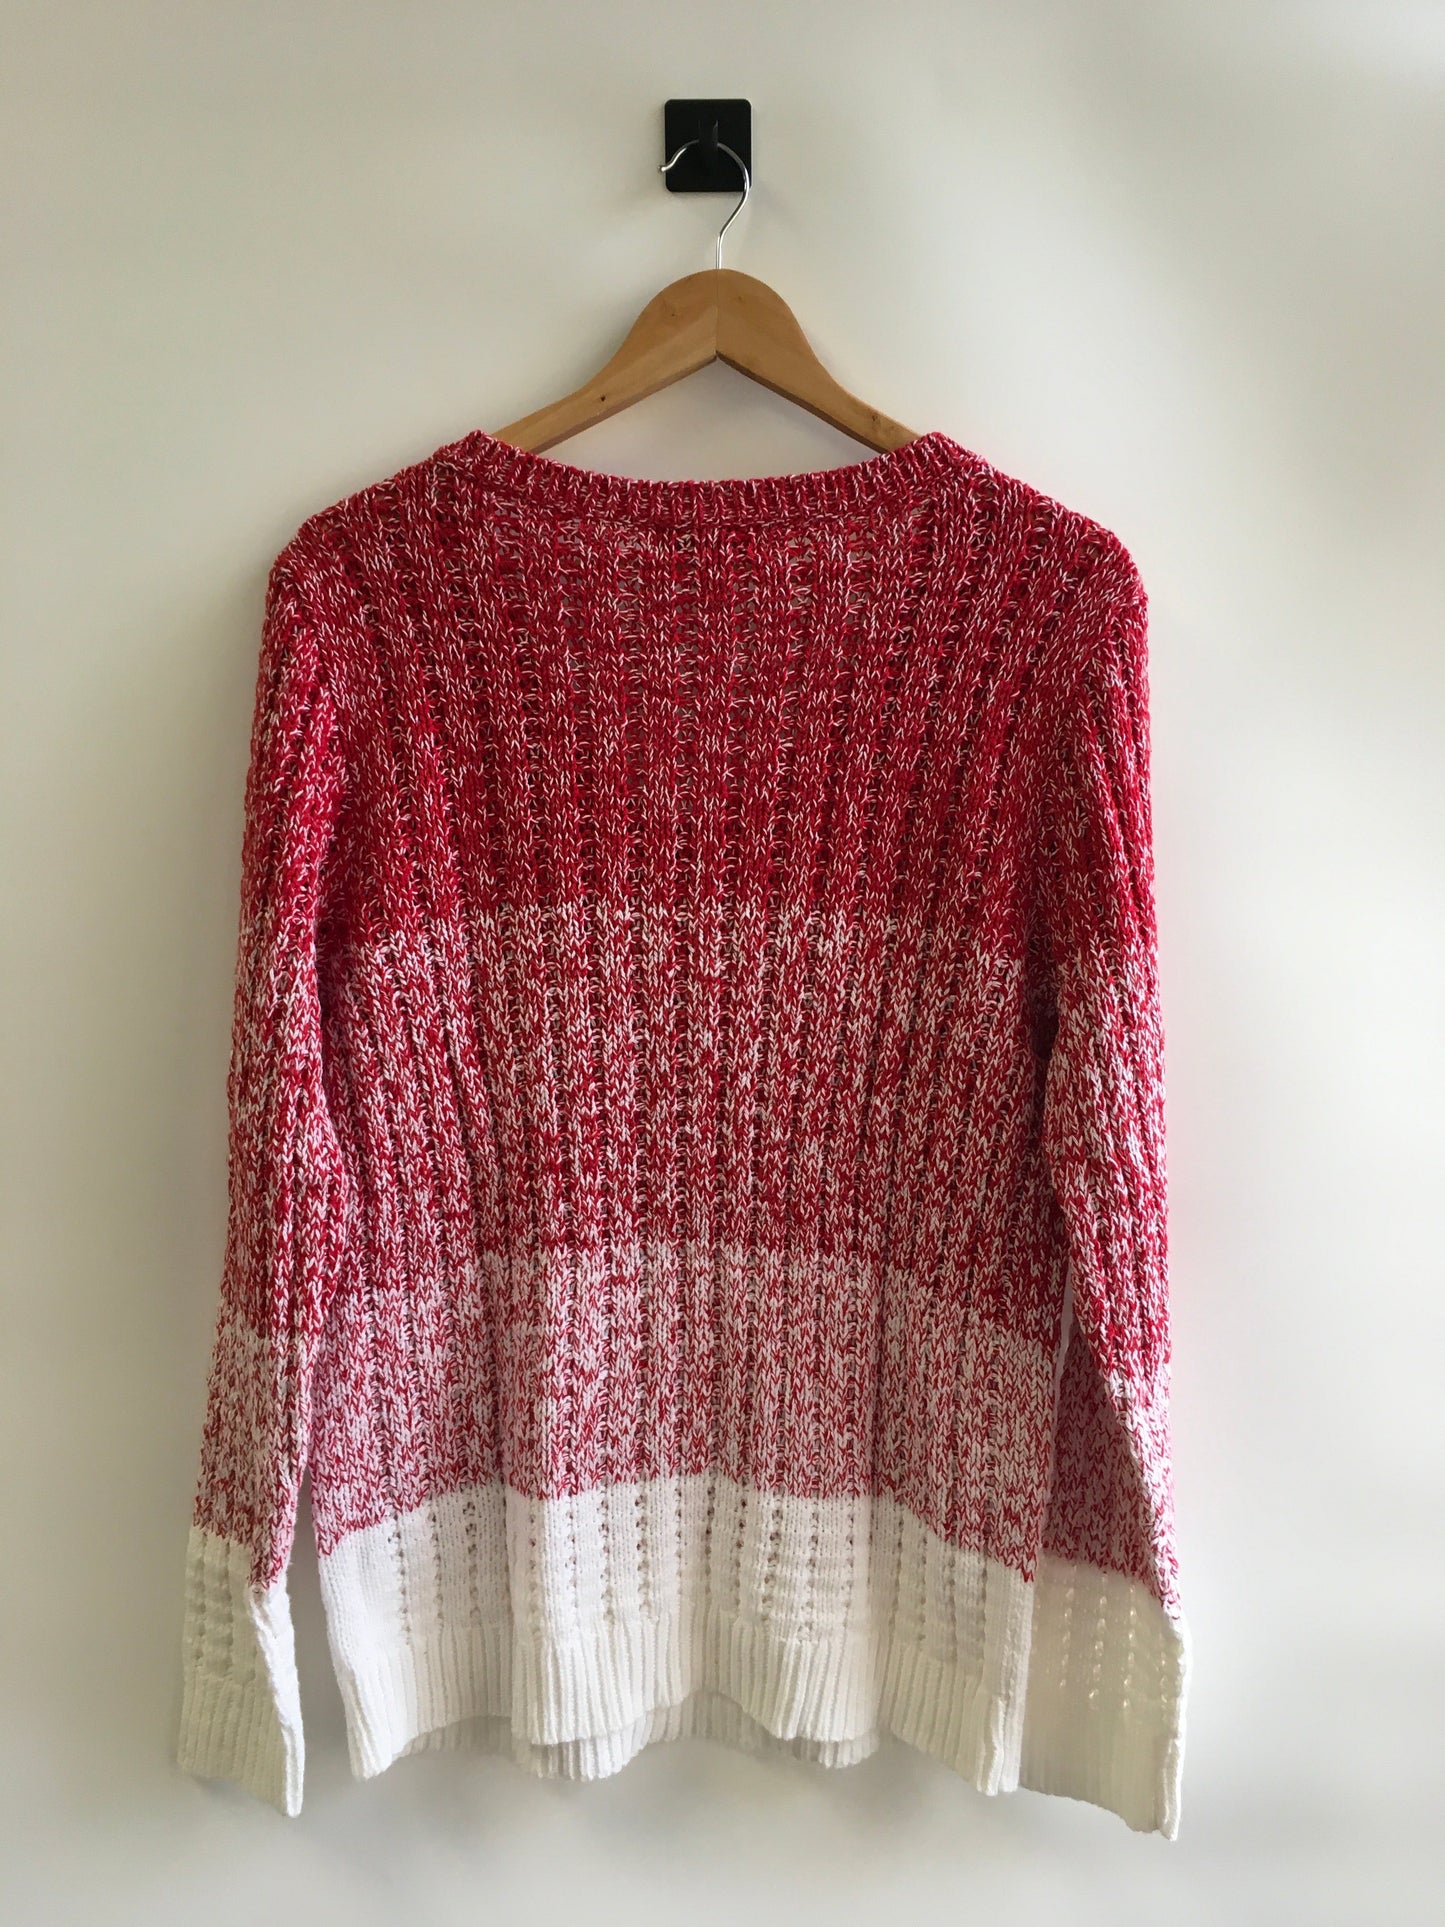 Sweater By Liz Claiborne  Size: Xl